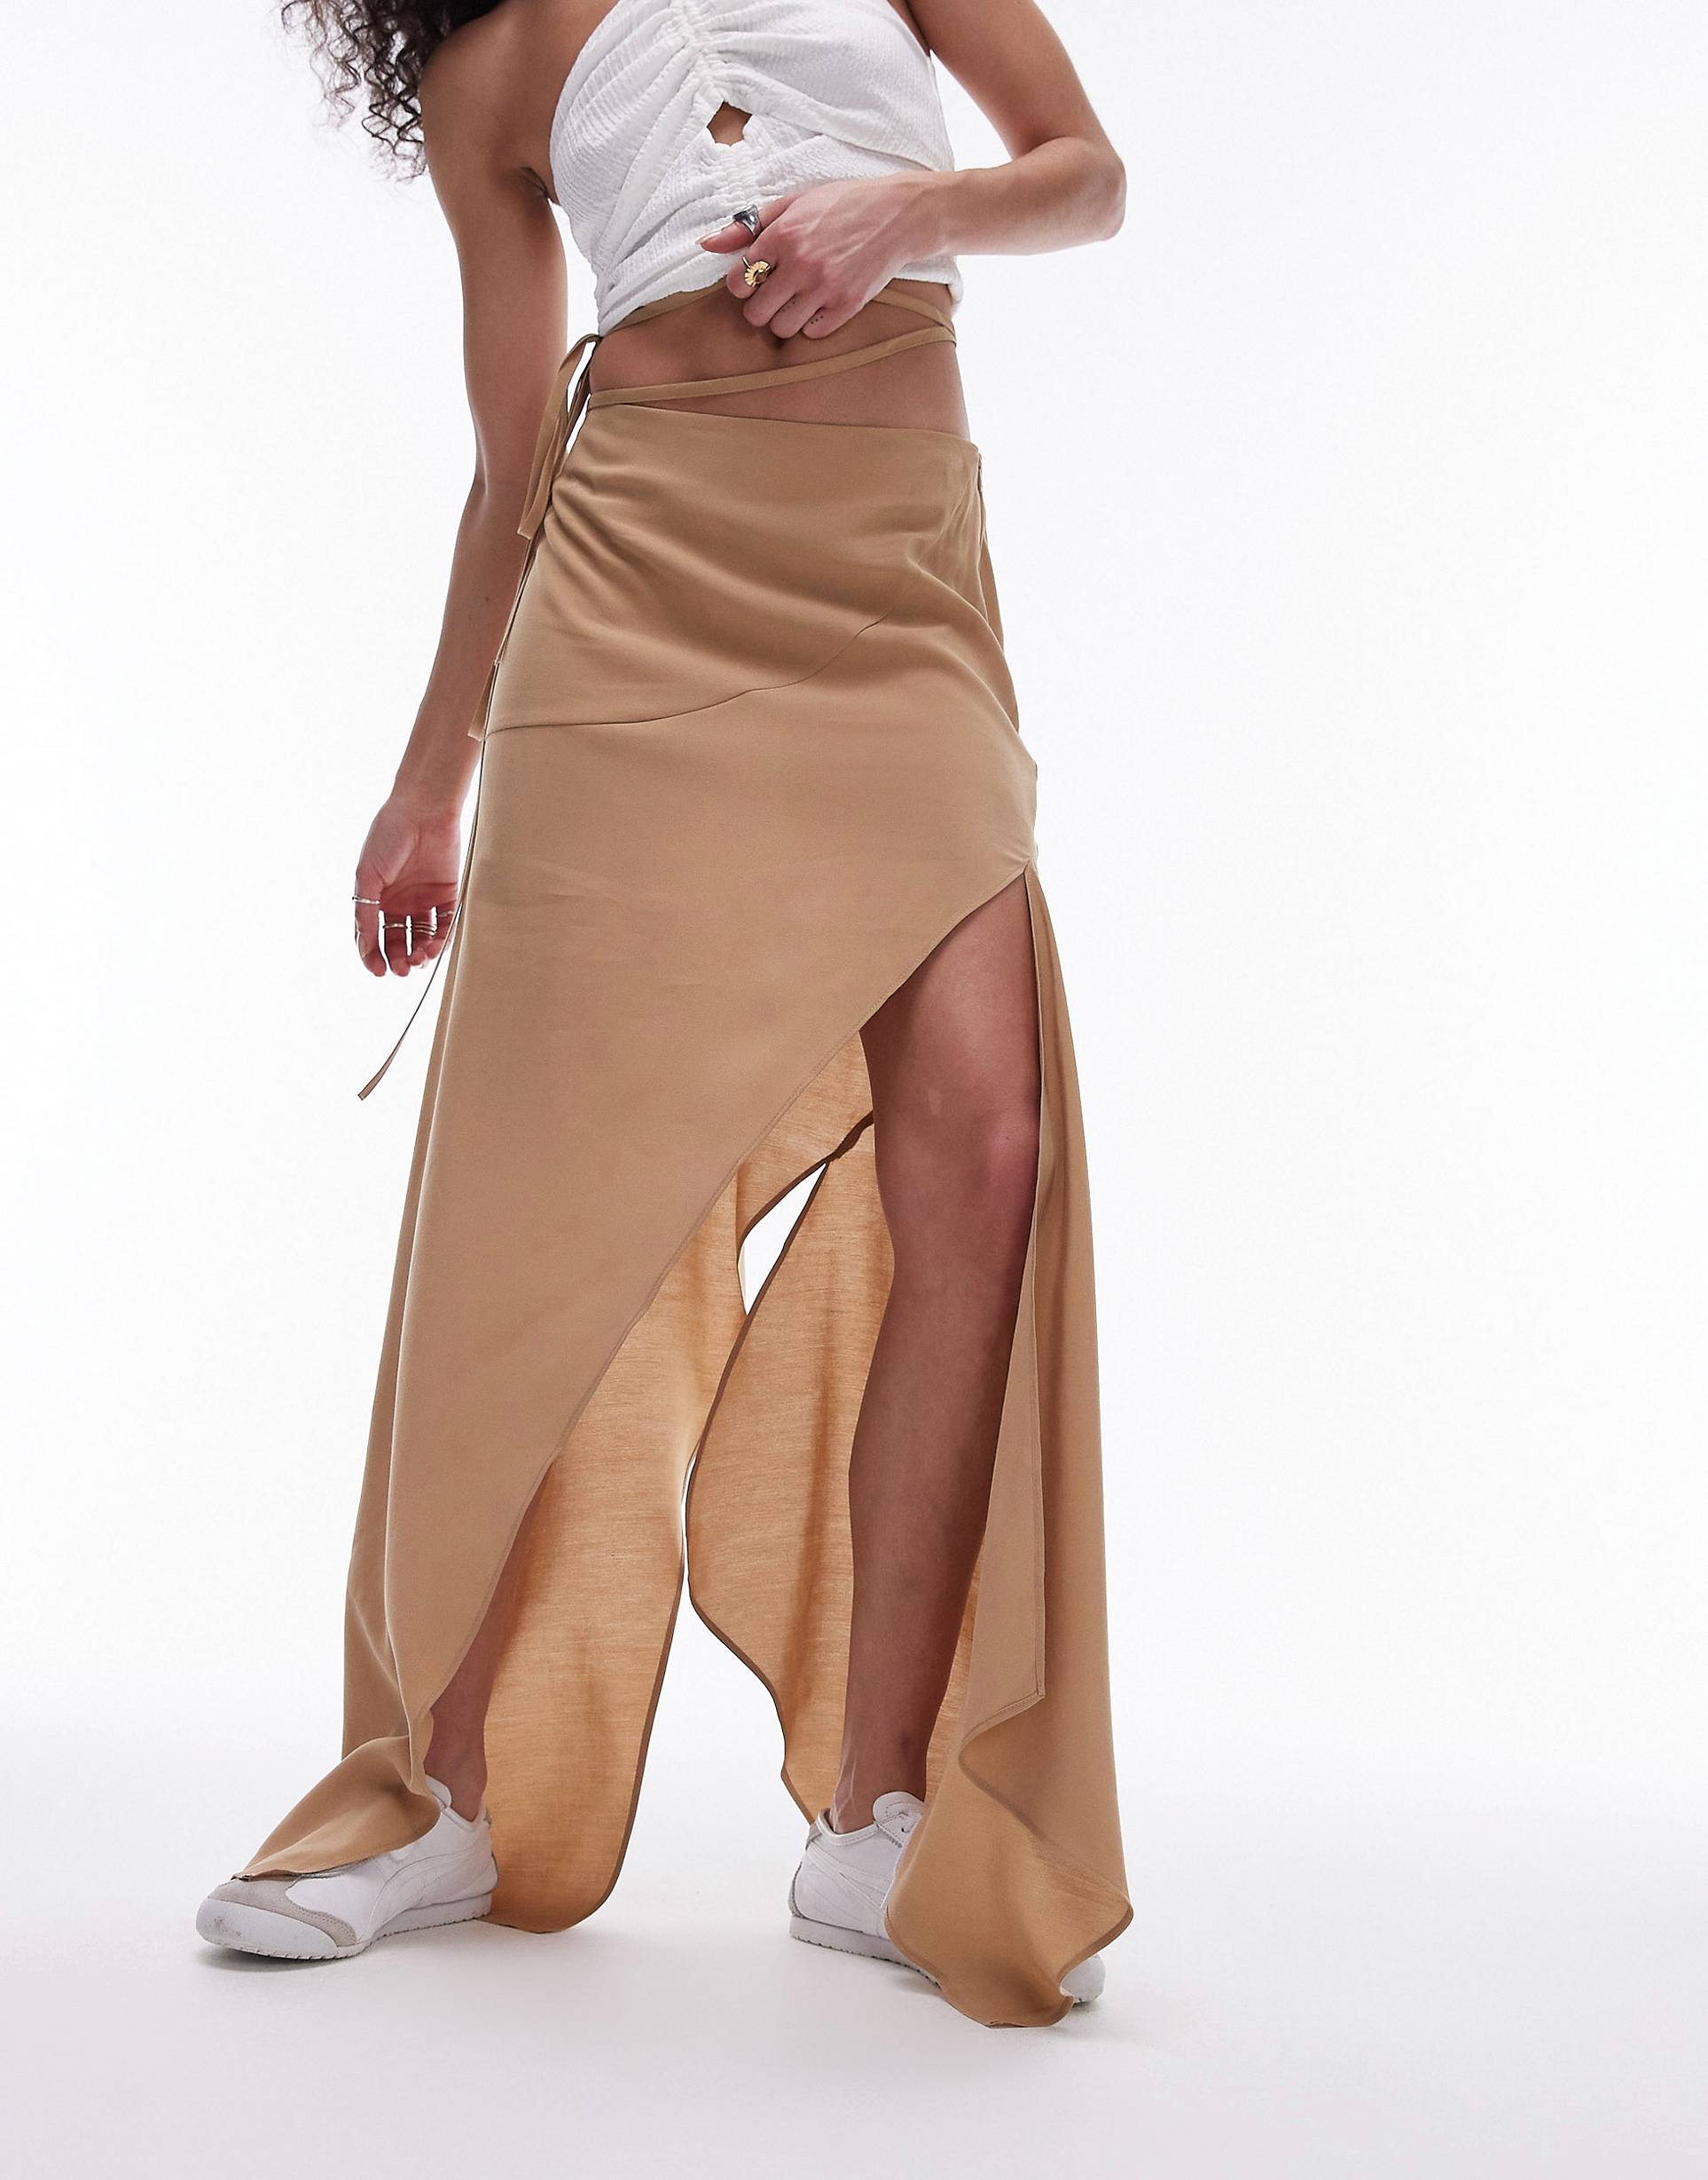 Юбка Topshop Hanky Hem Asymmetric, песочный юбка с асимметричным воланом отделка неполным переплетением